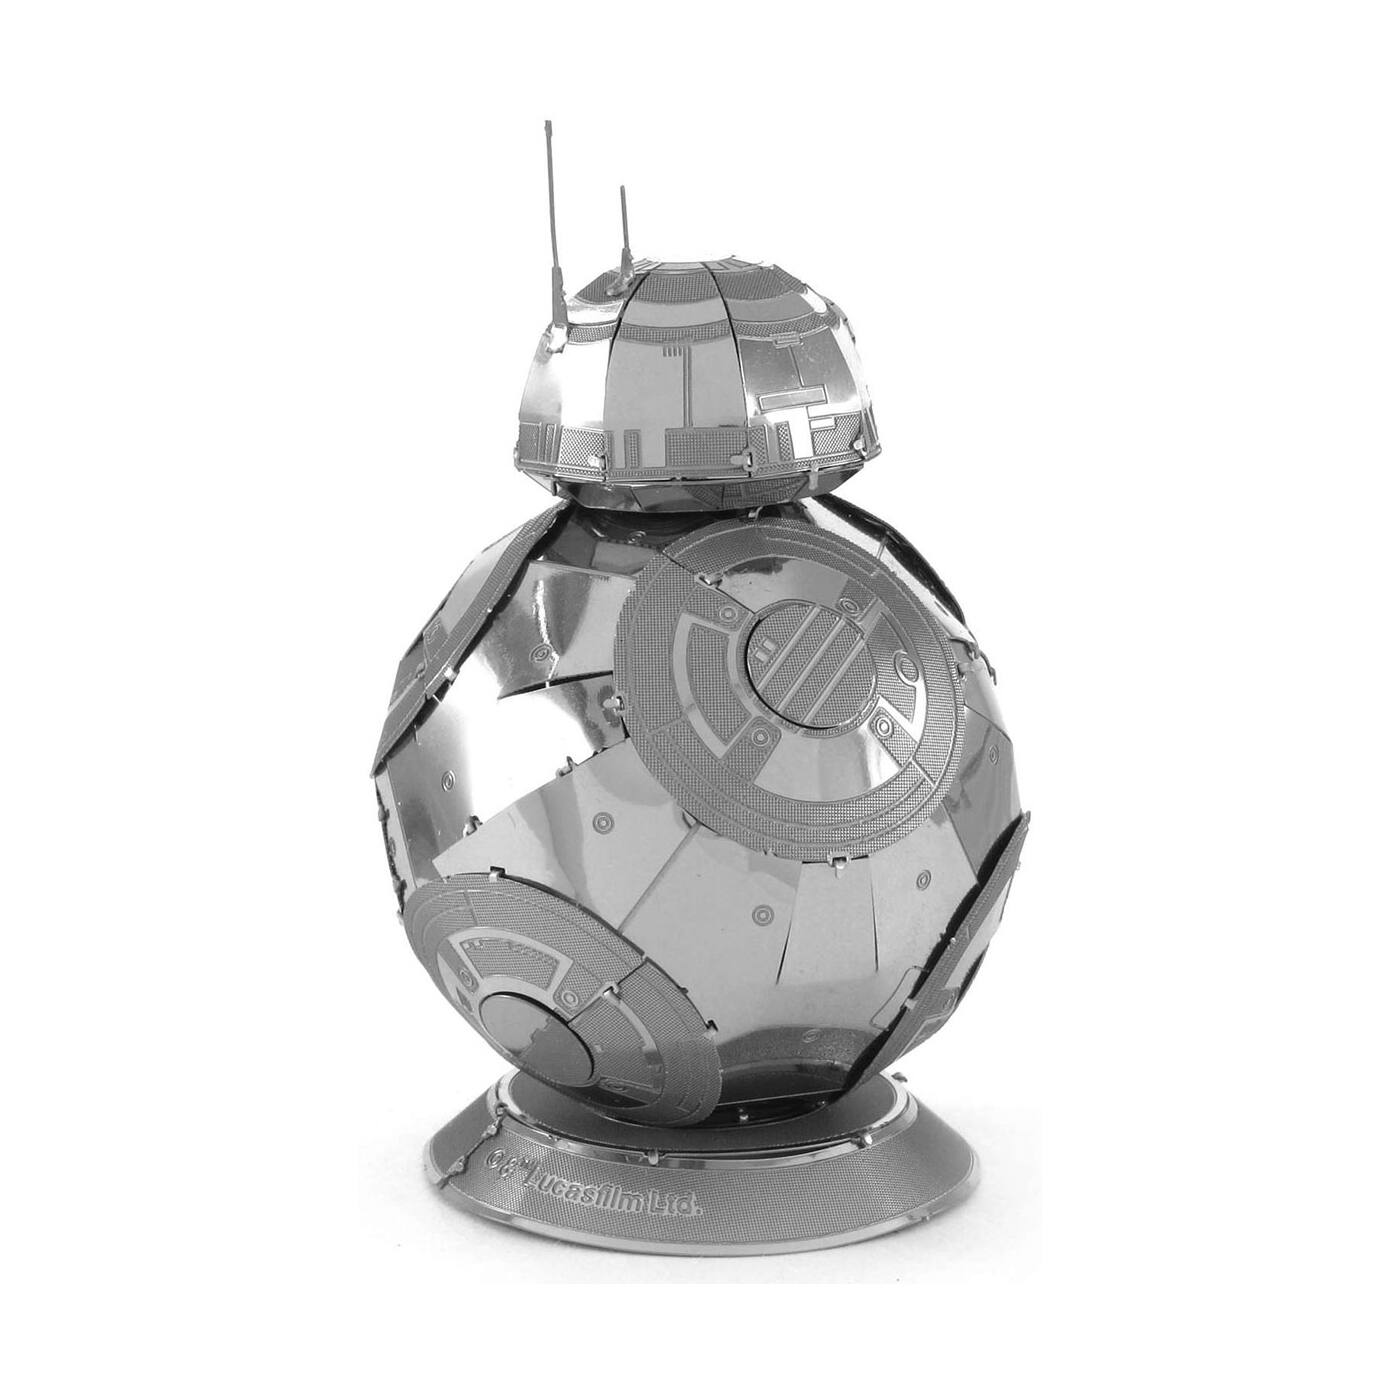 Metal earth star wars EP7 3D laser cut model kits BB-8 droid 